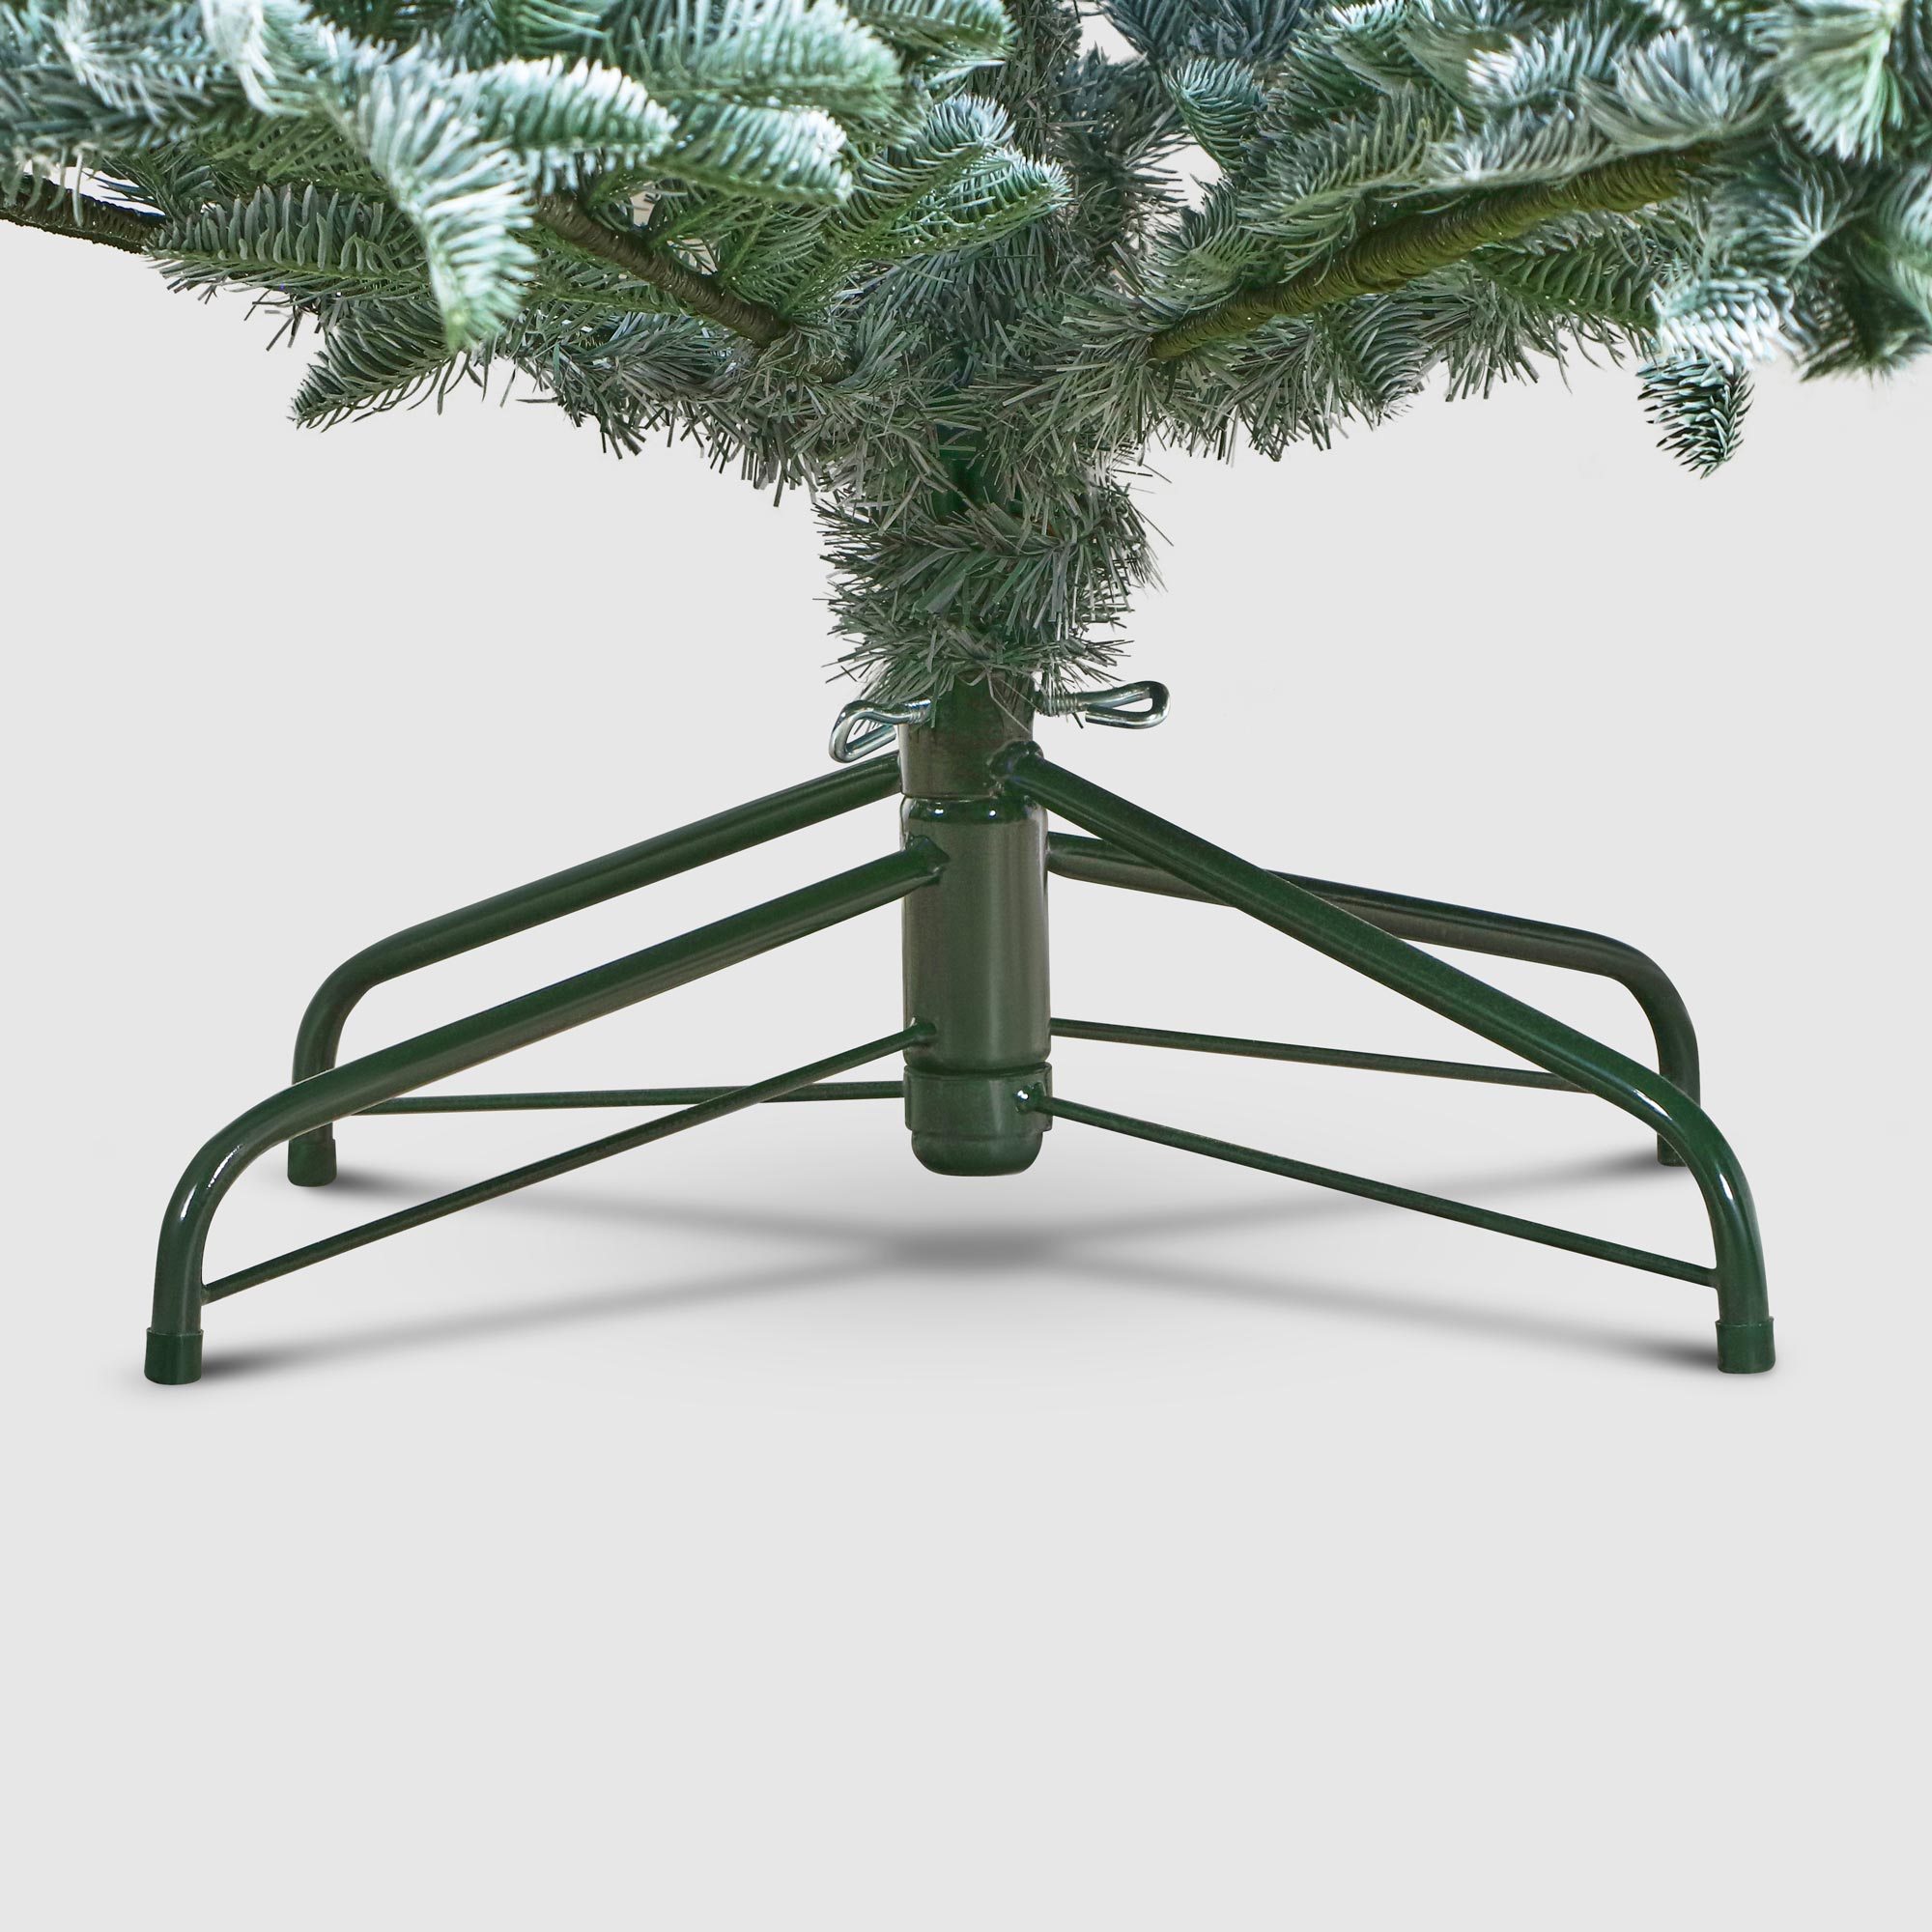 Ель новогодняя Triumph Tree Hallarin 215 см, цвет зеленый - фото 6